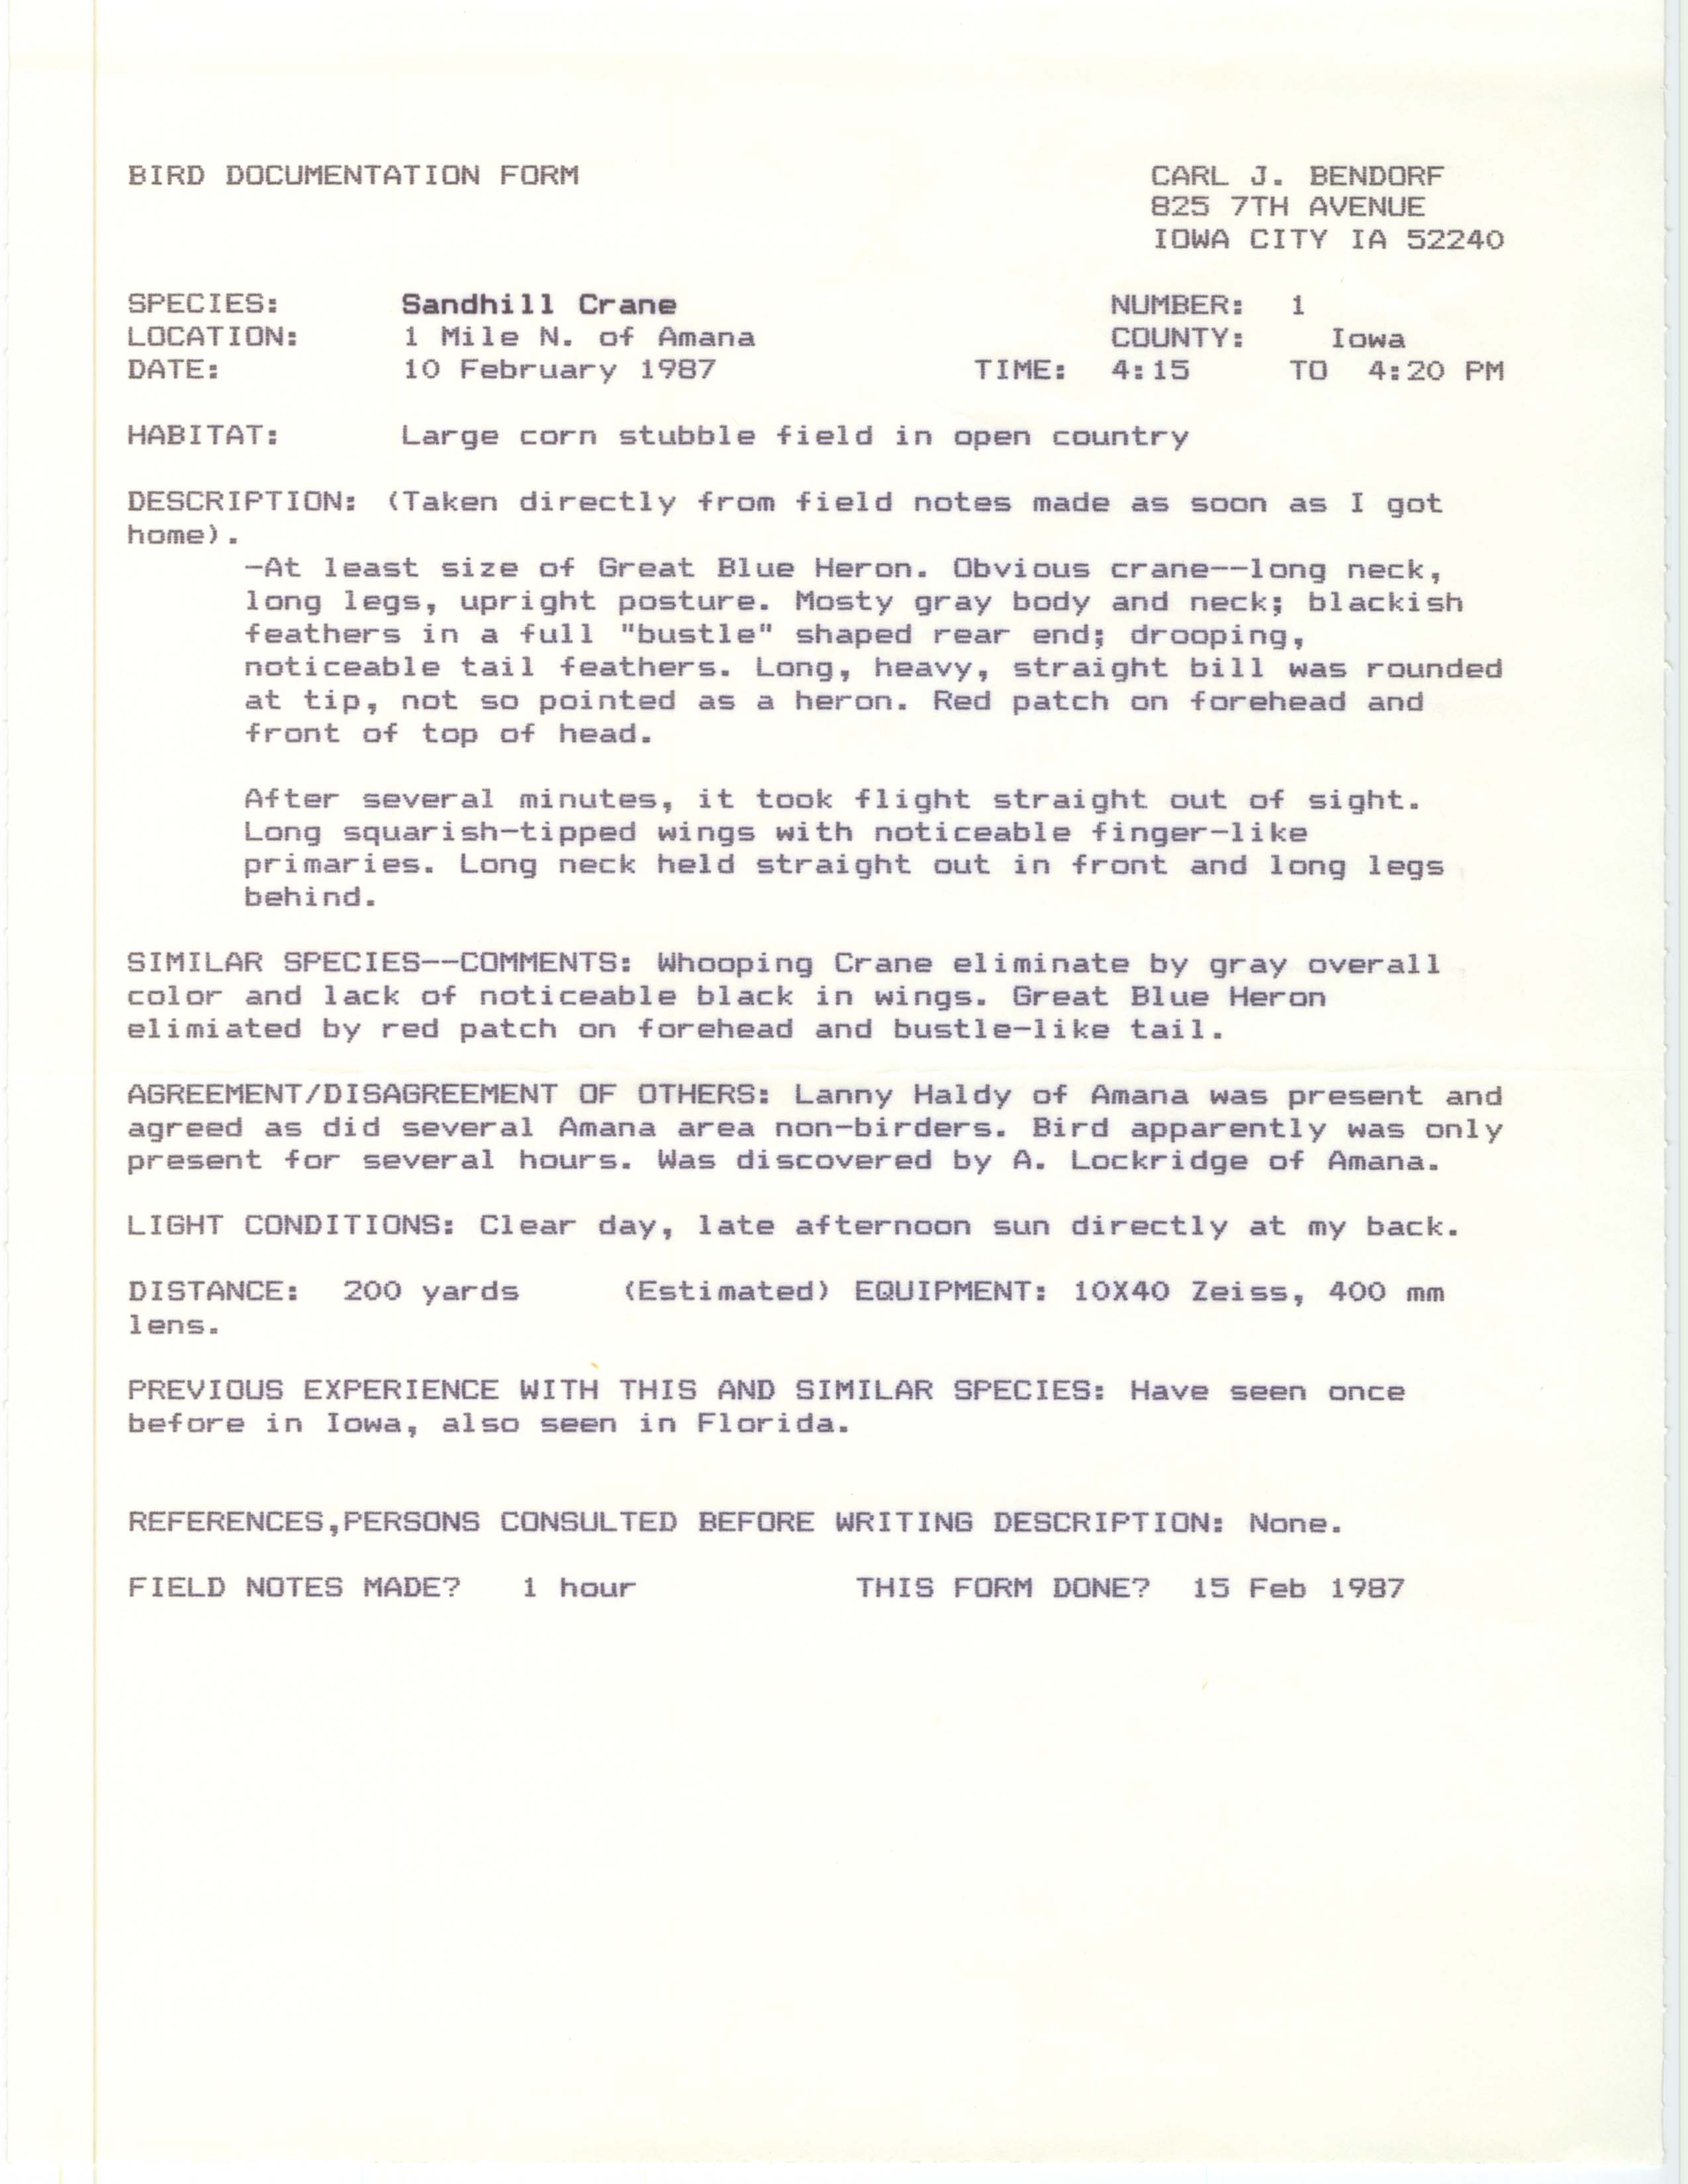 Rare bird documentation form for Sandhill Crane north of Amana, 1987